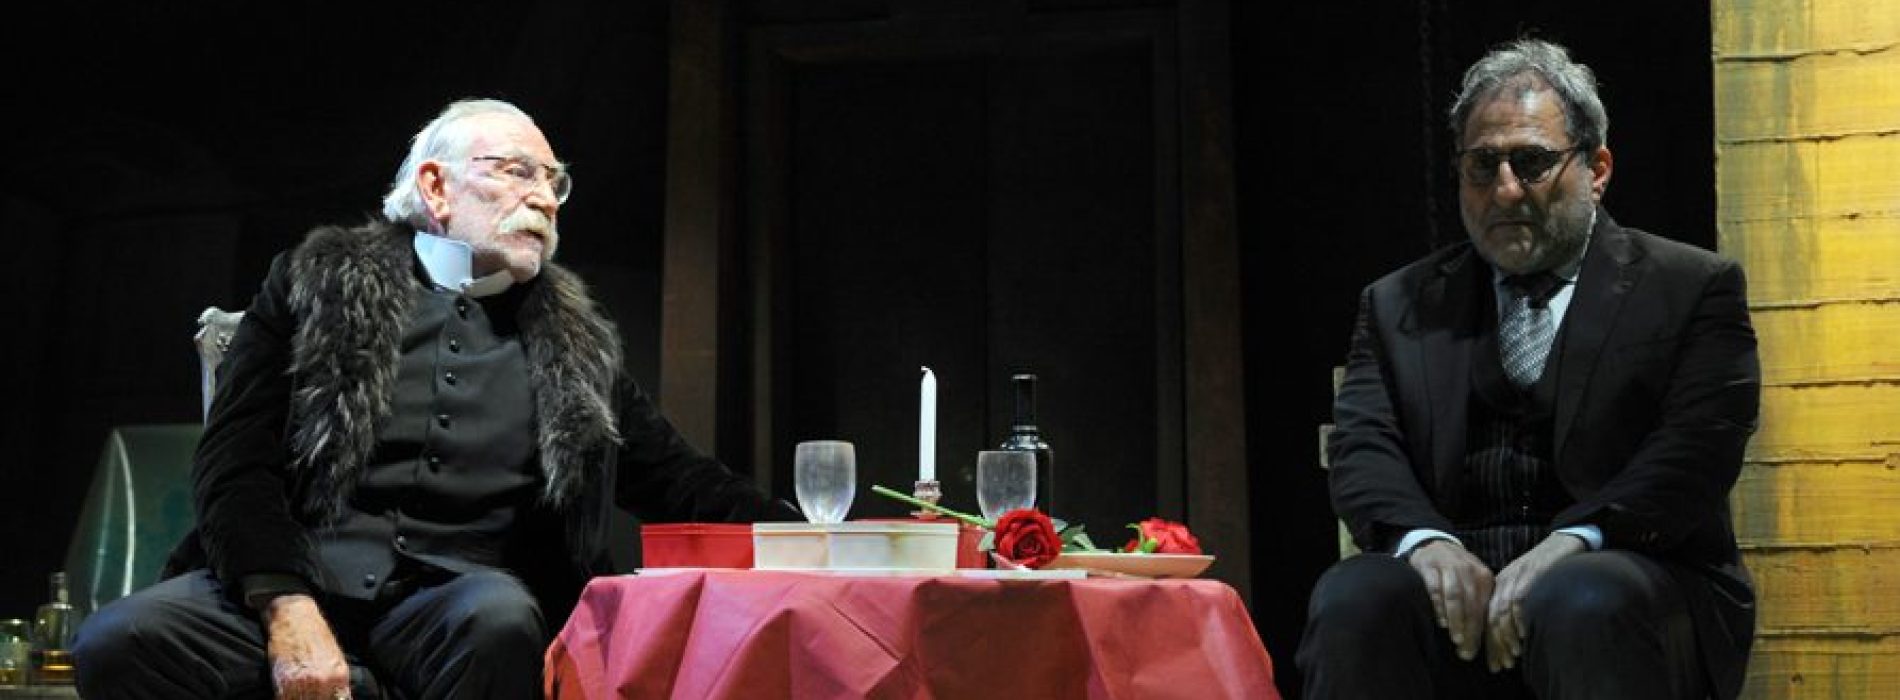 Teatro Nuovo, Renato Carpentieri in scena con Il Complice